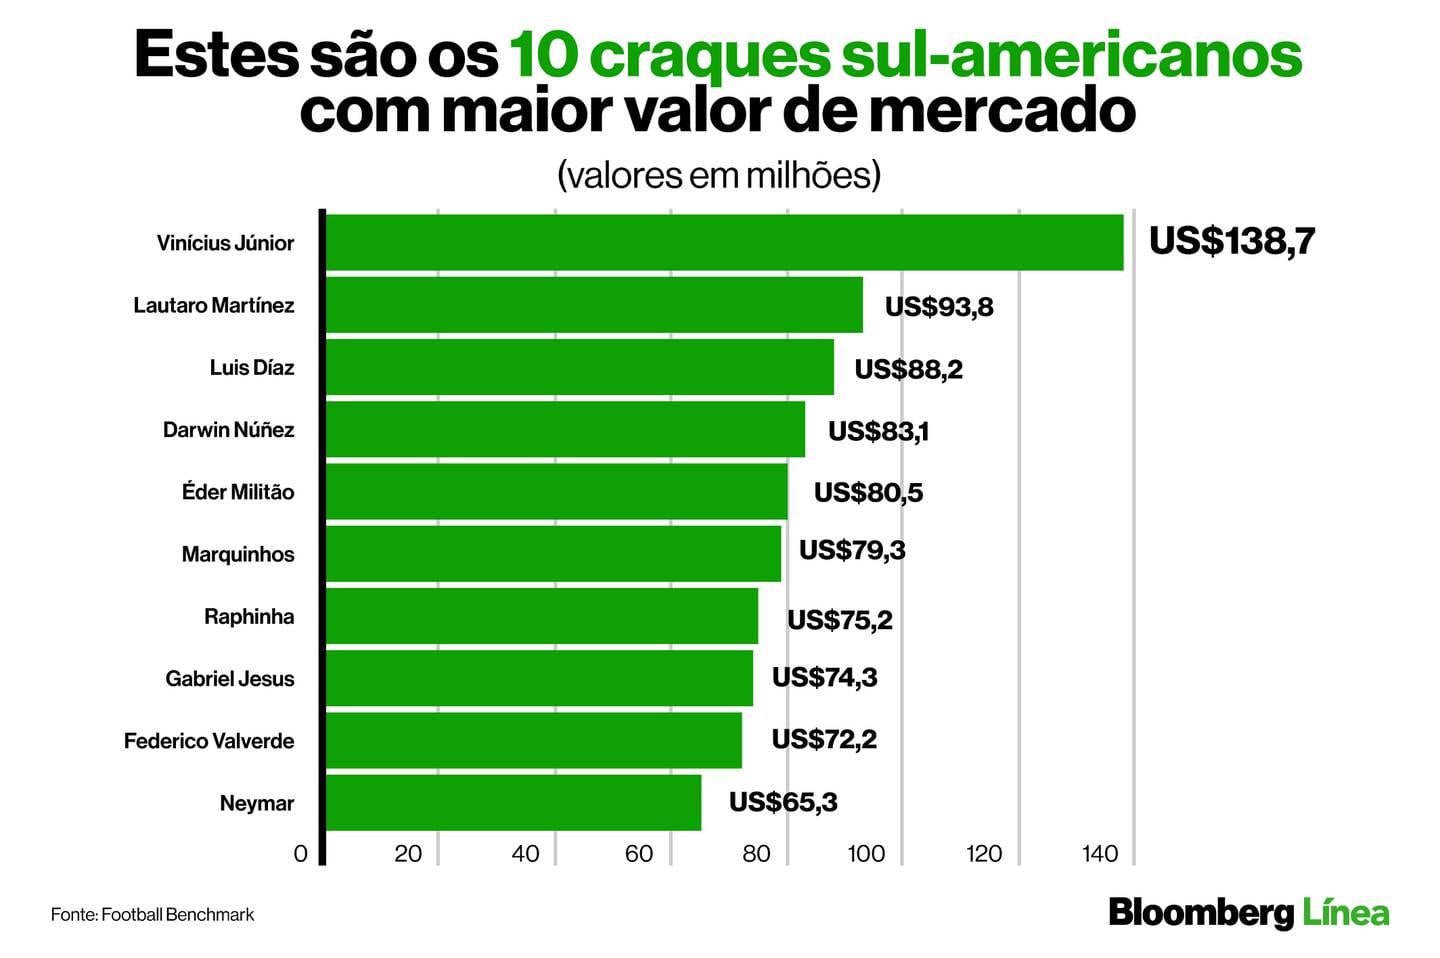 Gráfico com os 10 jogadores mais valiosos da América do Sul que atuam nas principais ligas europeiasdfd